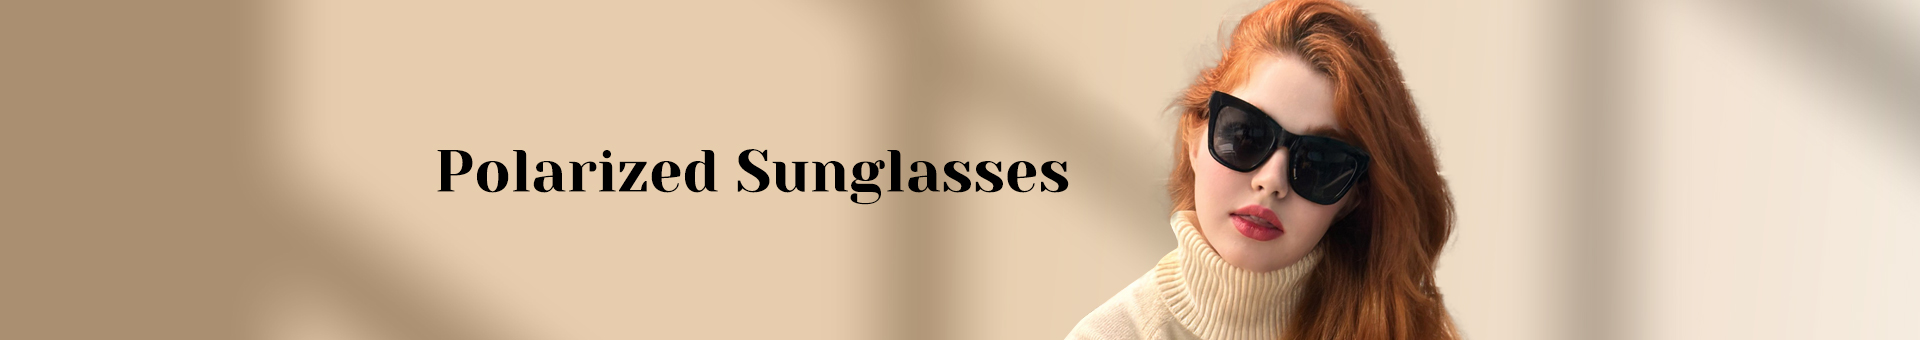 Polarized Sunglasses for Men & Women